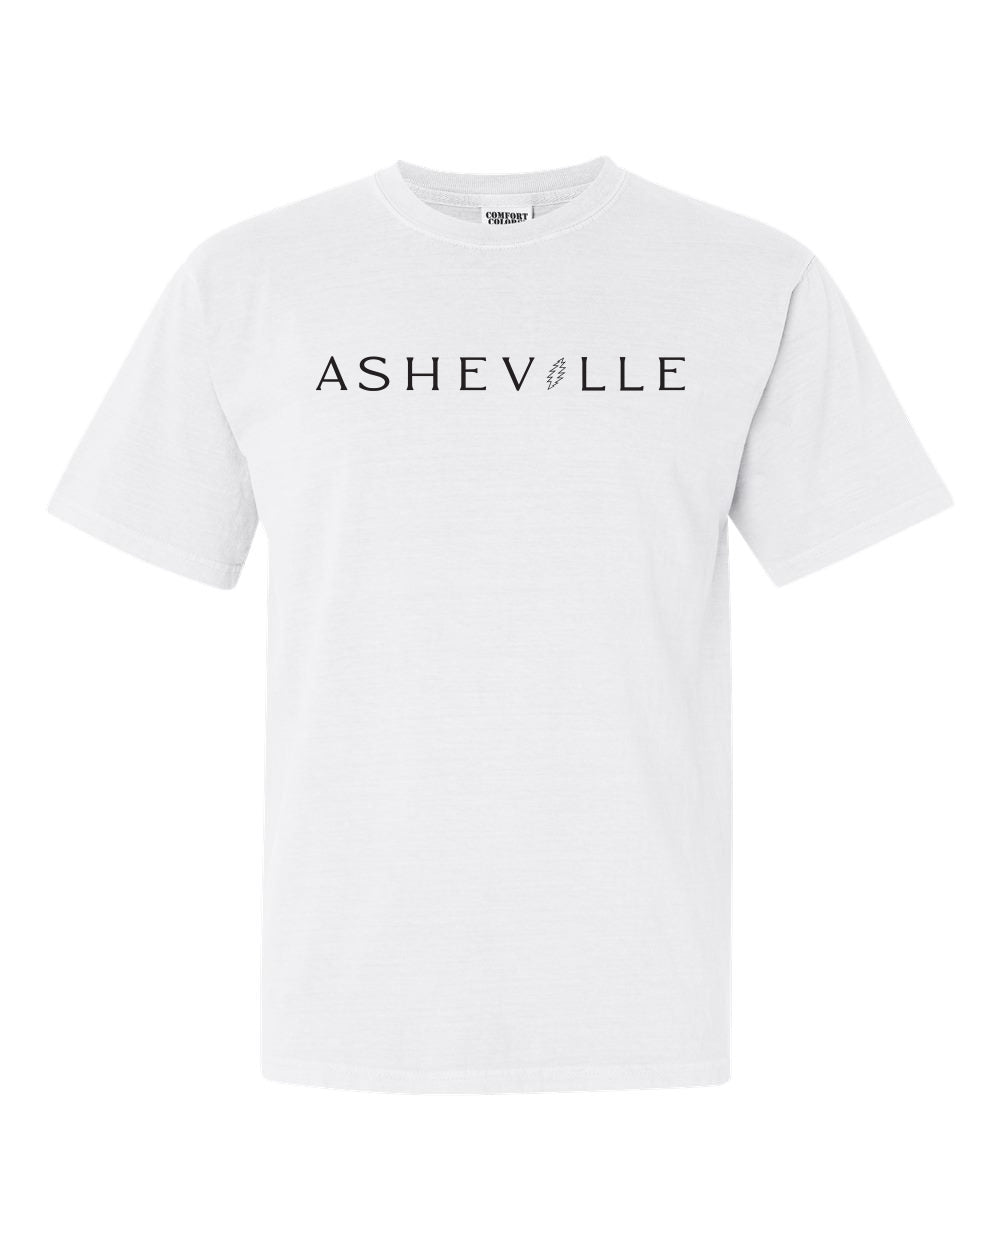 ASHEVILLE Stanley Bear T-Shirt White - The ASHEVILLE Co. TM